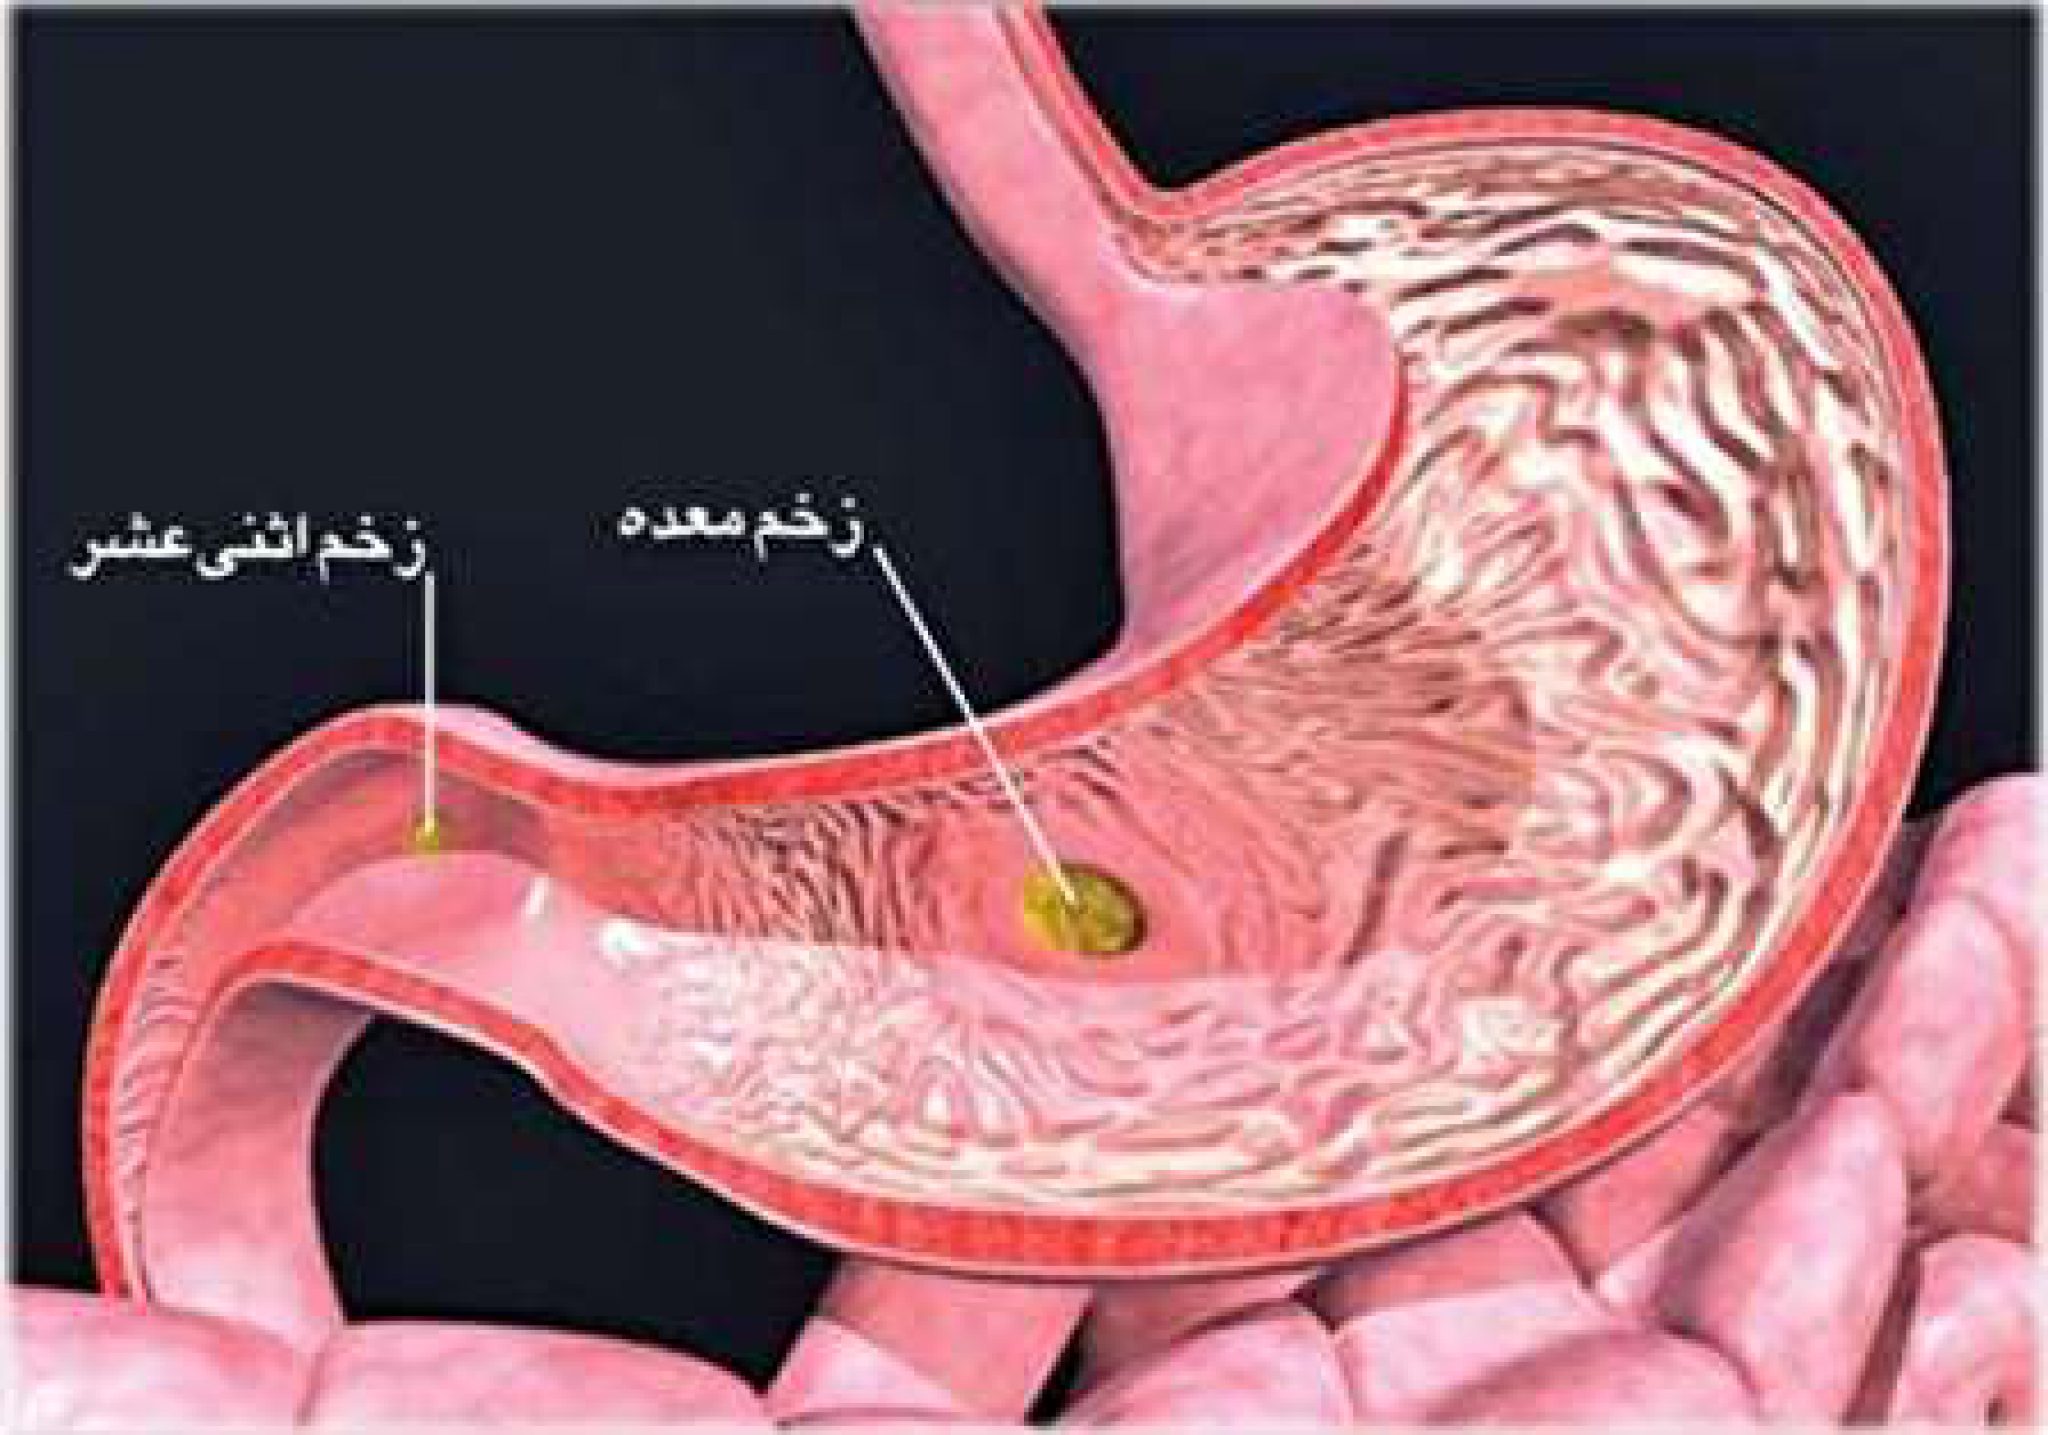 Тотальный желудка. Каллезная язва желудка. Фолликулярный дуоденит. Хронический гастрит дуоденит.